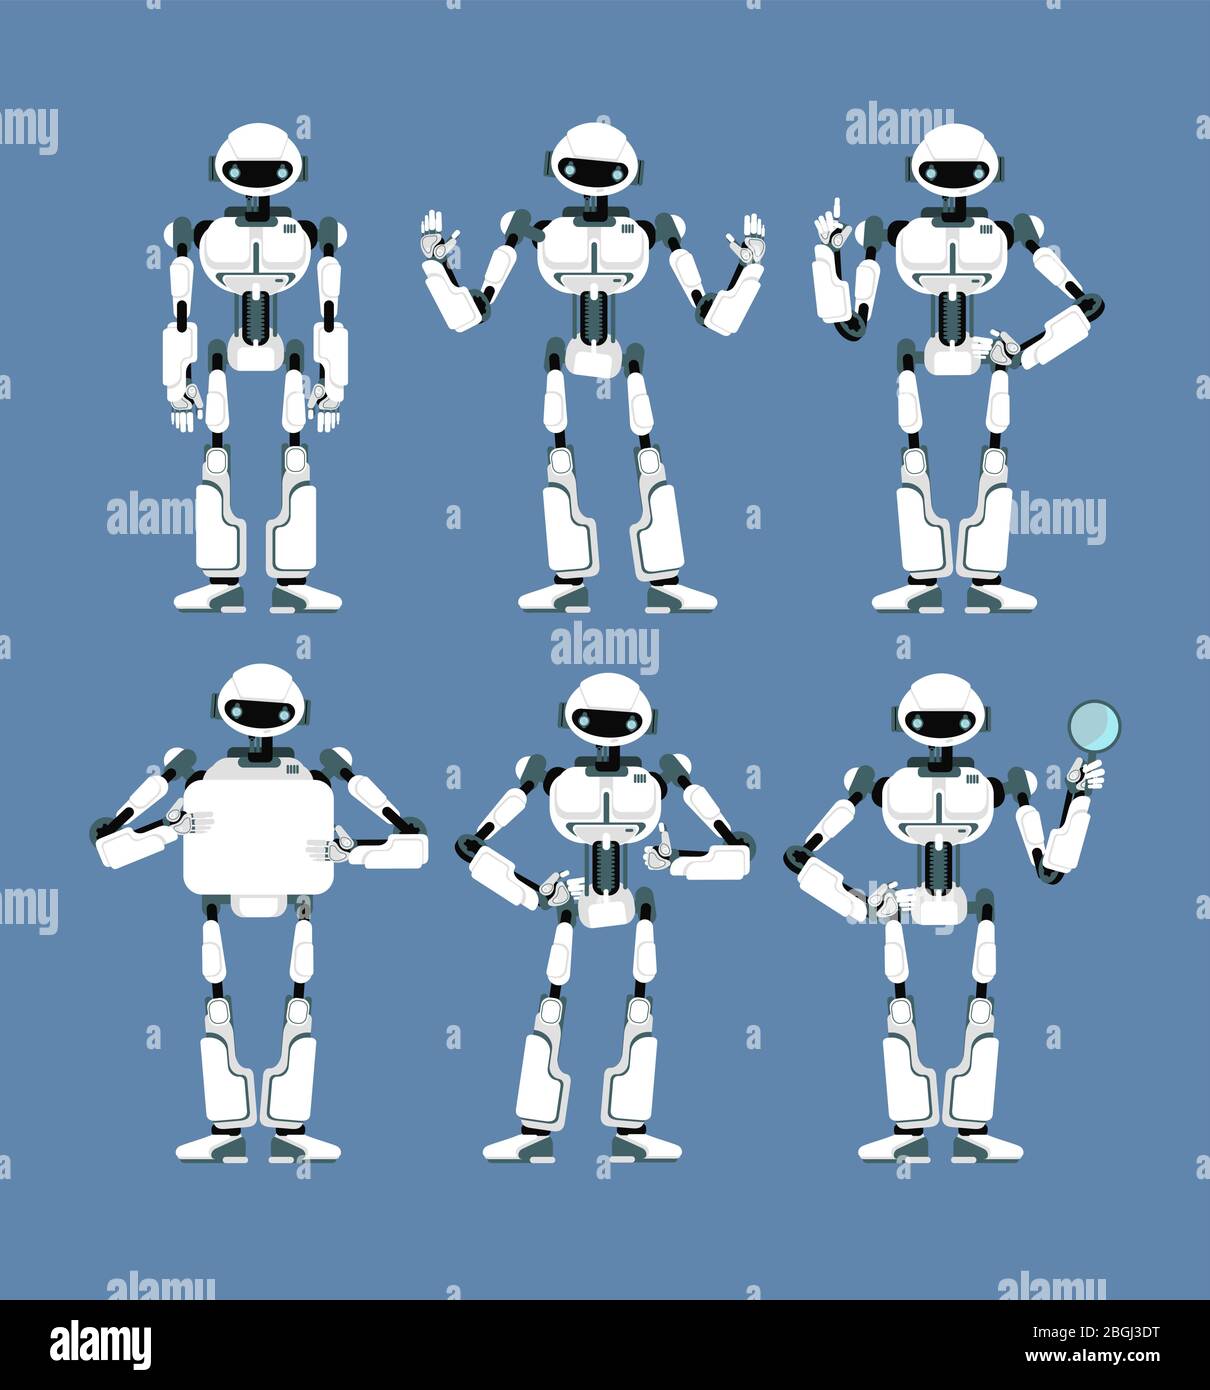 Robot cybernetico android con braccia bioniche e occhi in diverse pose. Carino cartoon scifi humanoid mascotte set. Collezione di robot artificiale futuristico, illustrazione vettoriale Illustrazione Vettoriale